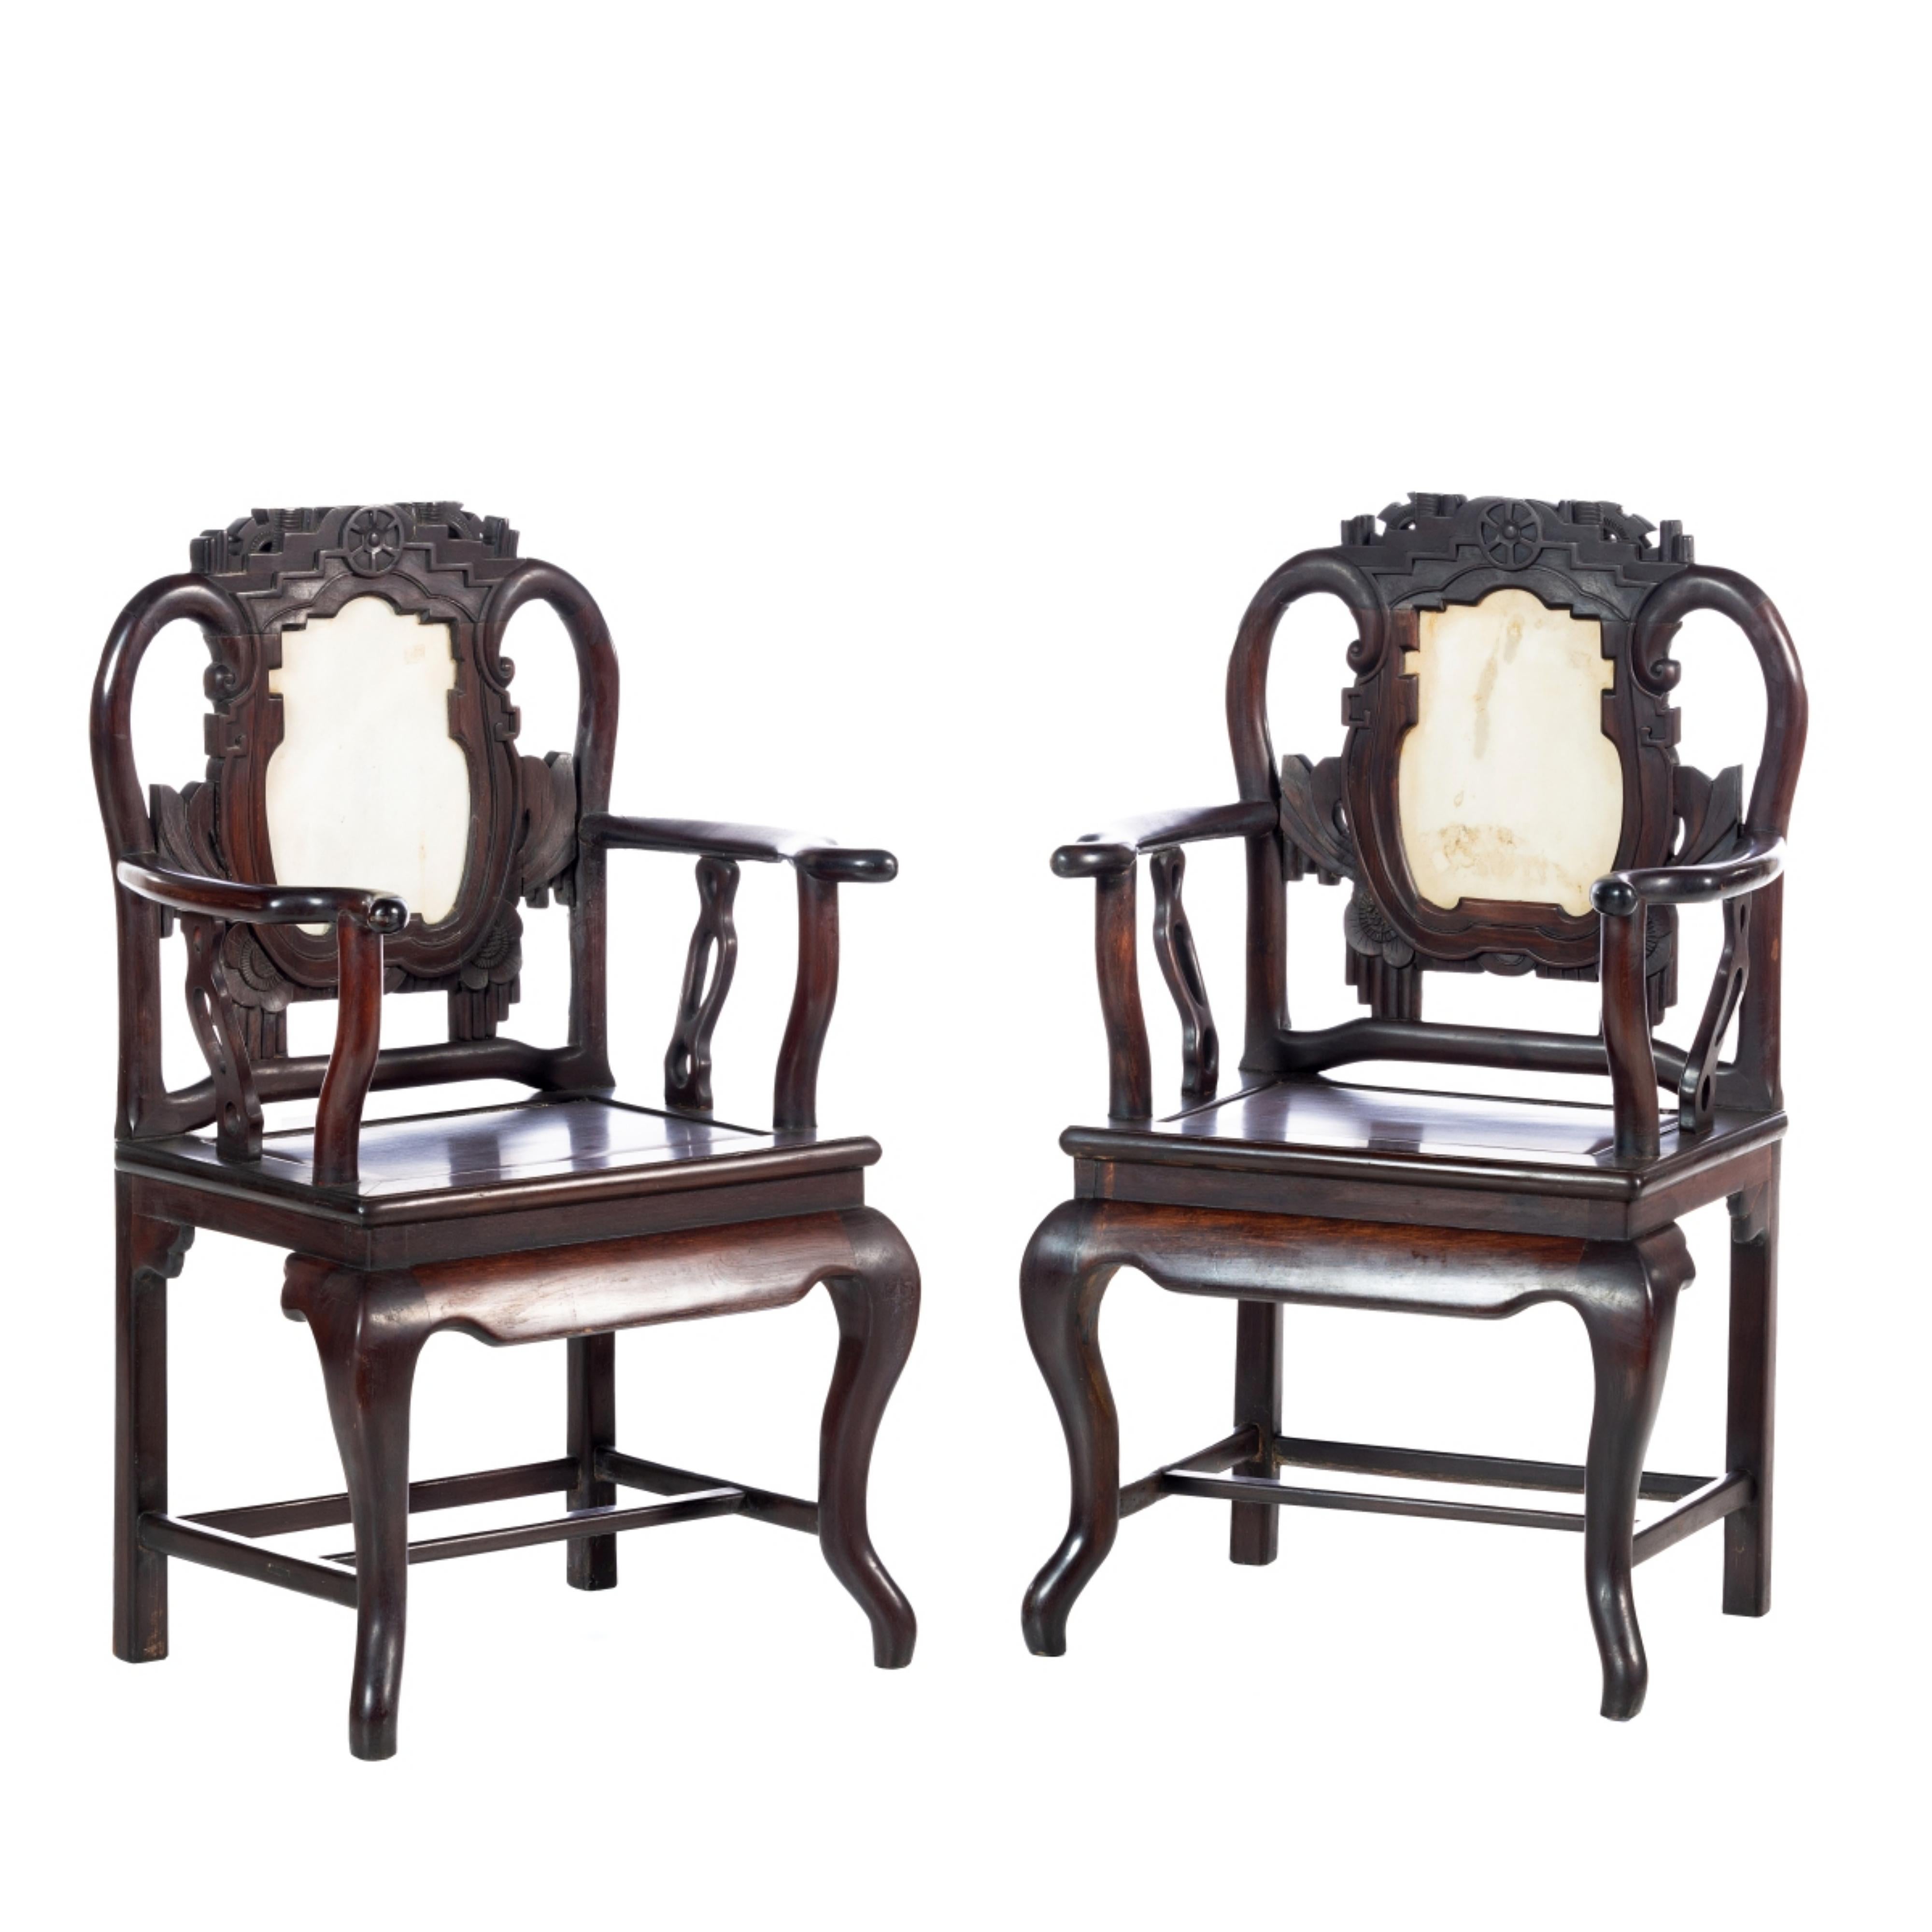 Quatre (4) fauteuils

Chinois, 19e siècle,
en bois dur et en marbre.
Dim. : 96 x 59 x 44 cm
bonnes conditions